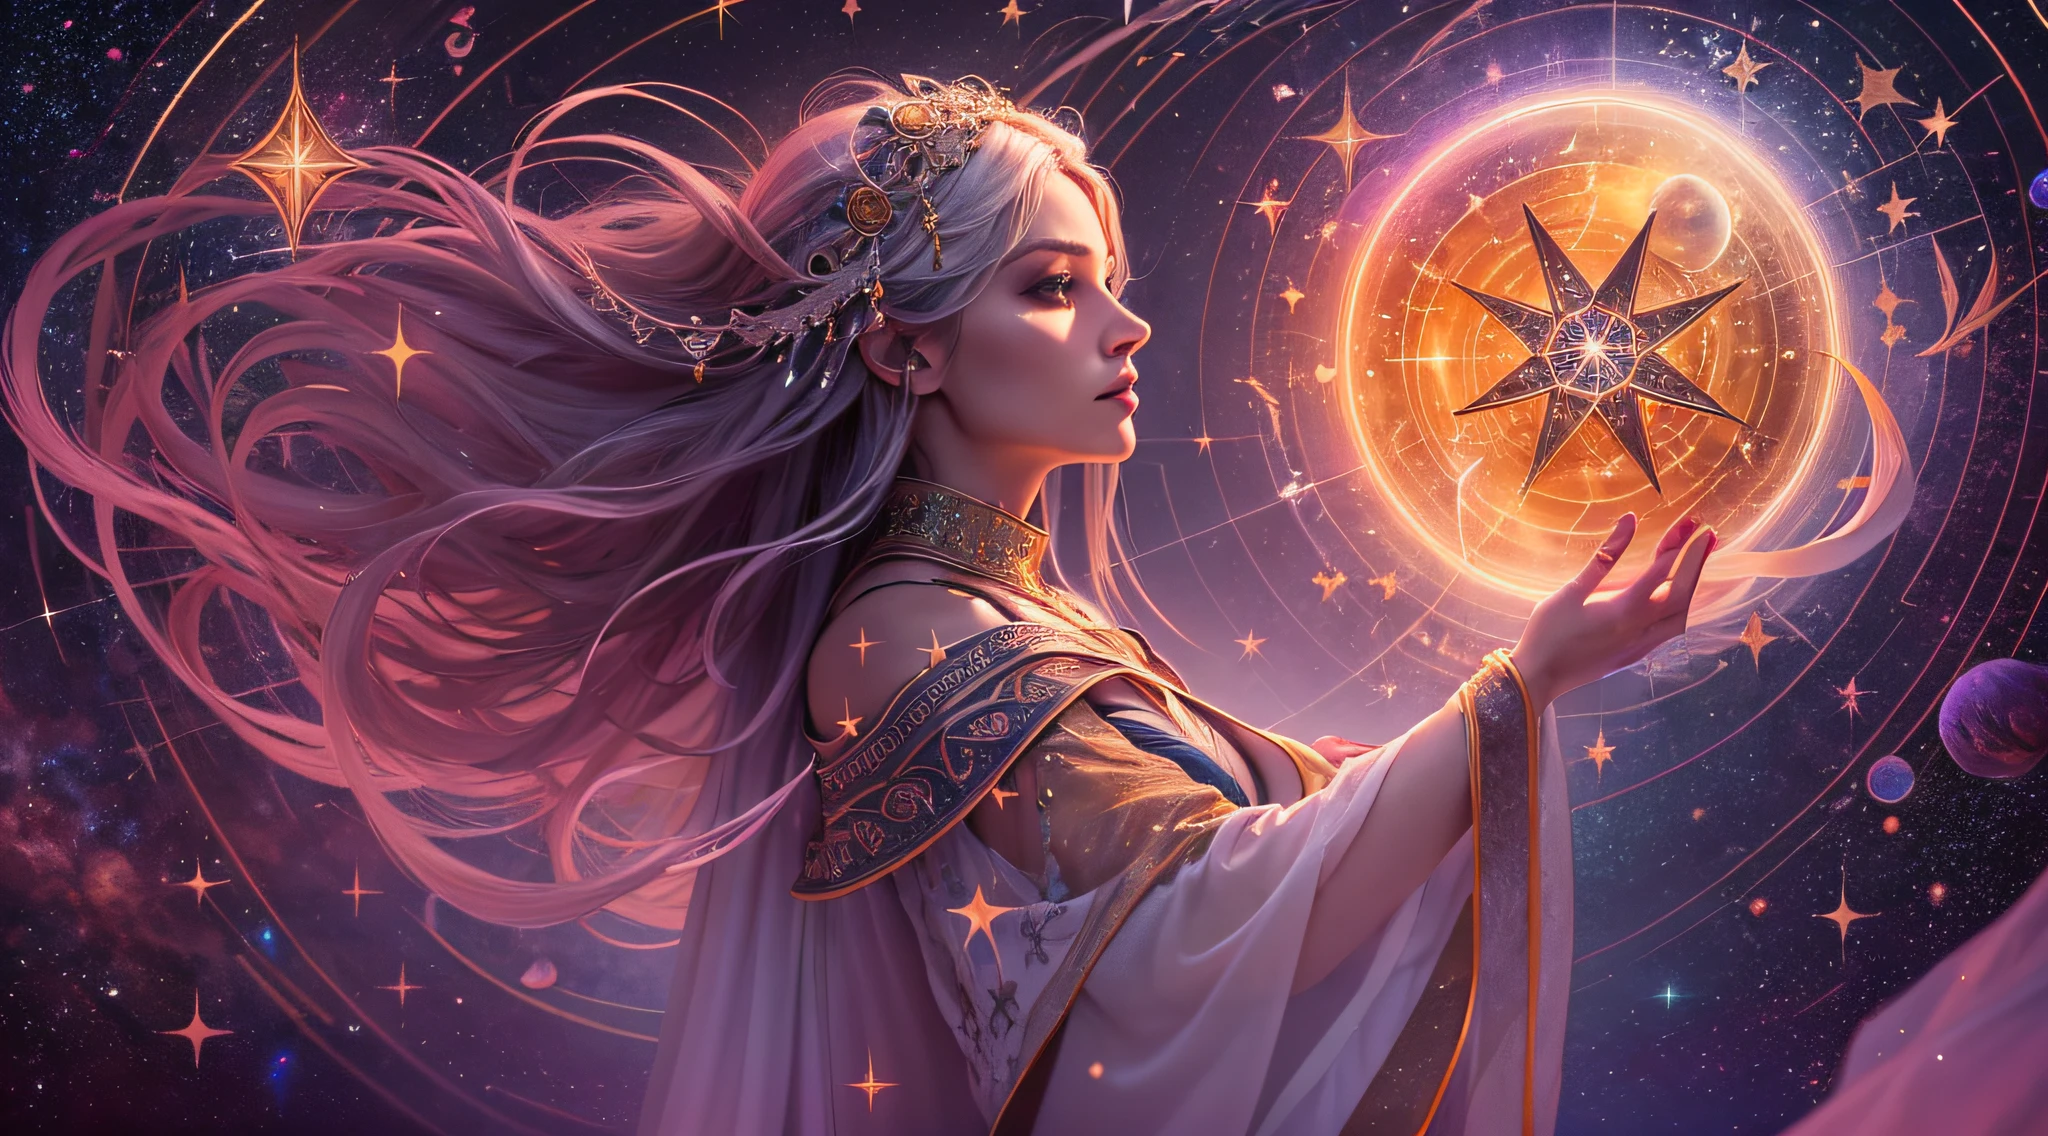 В магическом круге, нарисованном древними рунами, Волшебник стоит с грацией и силой. Она неземная фигура, завернутый в звездные одежды, сияющие, как ночное небо. Твои волосы подобны серебряным прядям, e seus olhos refletem o brilho de estrelas отдаленные. в ее руках, Она держит посох, украшенный люминесцентными кристаллами, передающими суть космоса.. Позади нее, Созвездия оживают, Танцуя по небу в симфонии света и волшебства.. Она хранительница древних тайн, Связь между небесным и земным царствами, способен направлять силу звезд в заклинания, выходящие за пределы человеческого понимания..